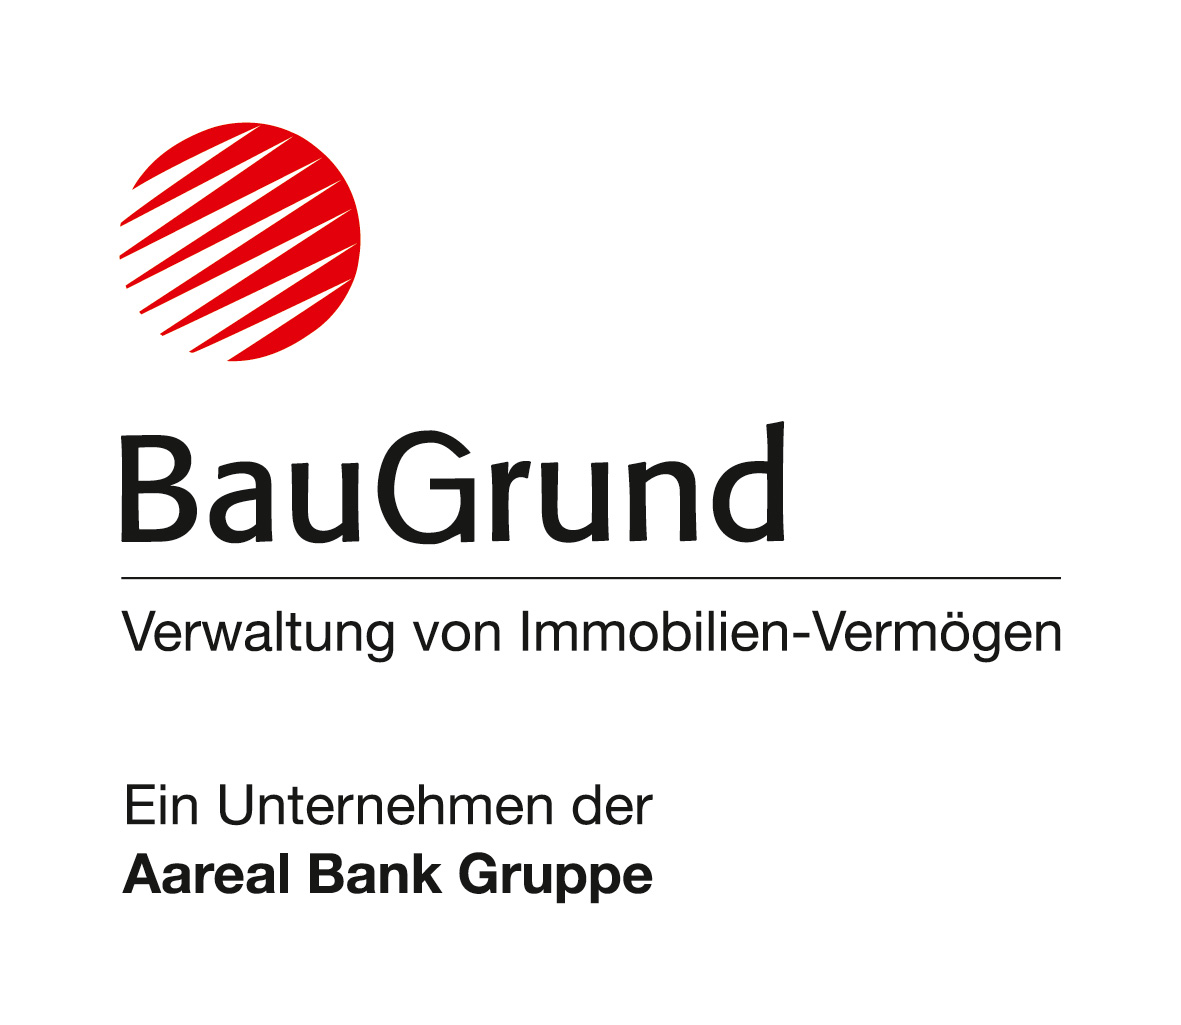 Bild 7 BauGrund Immobilien-Management GmbH in Wuppertal